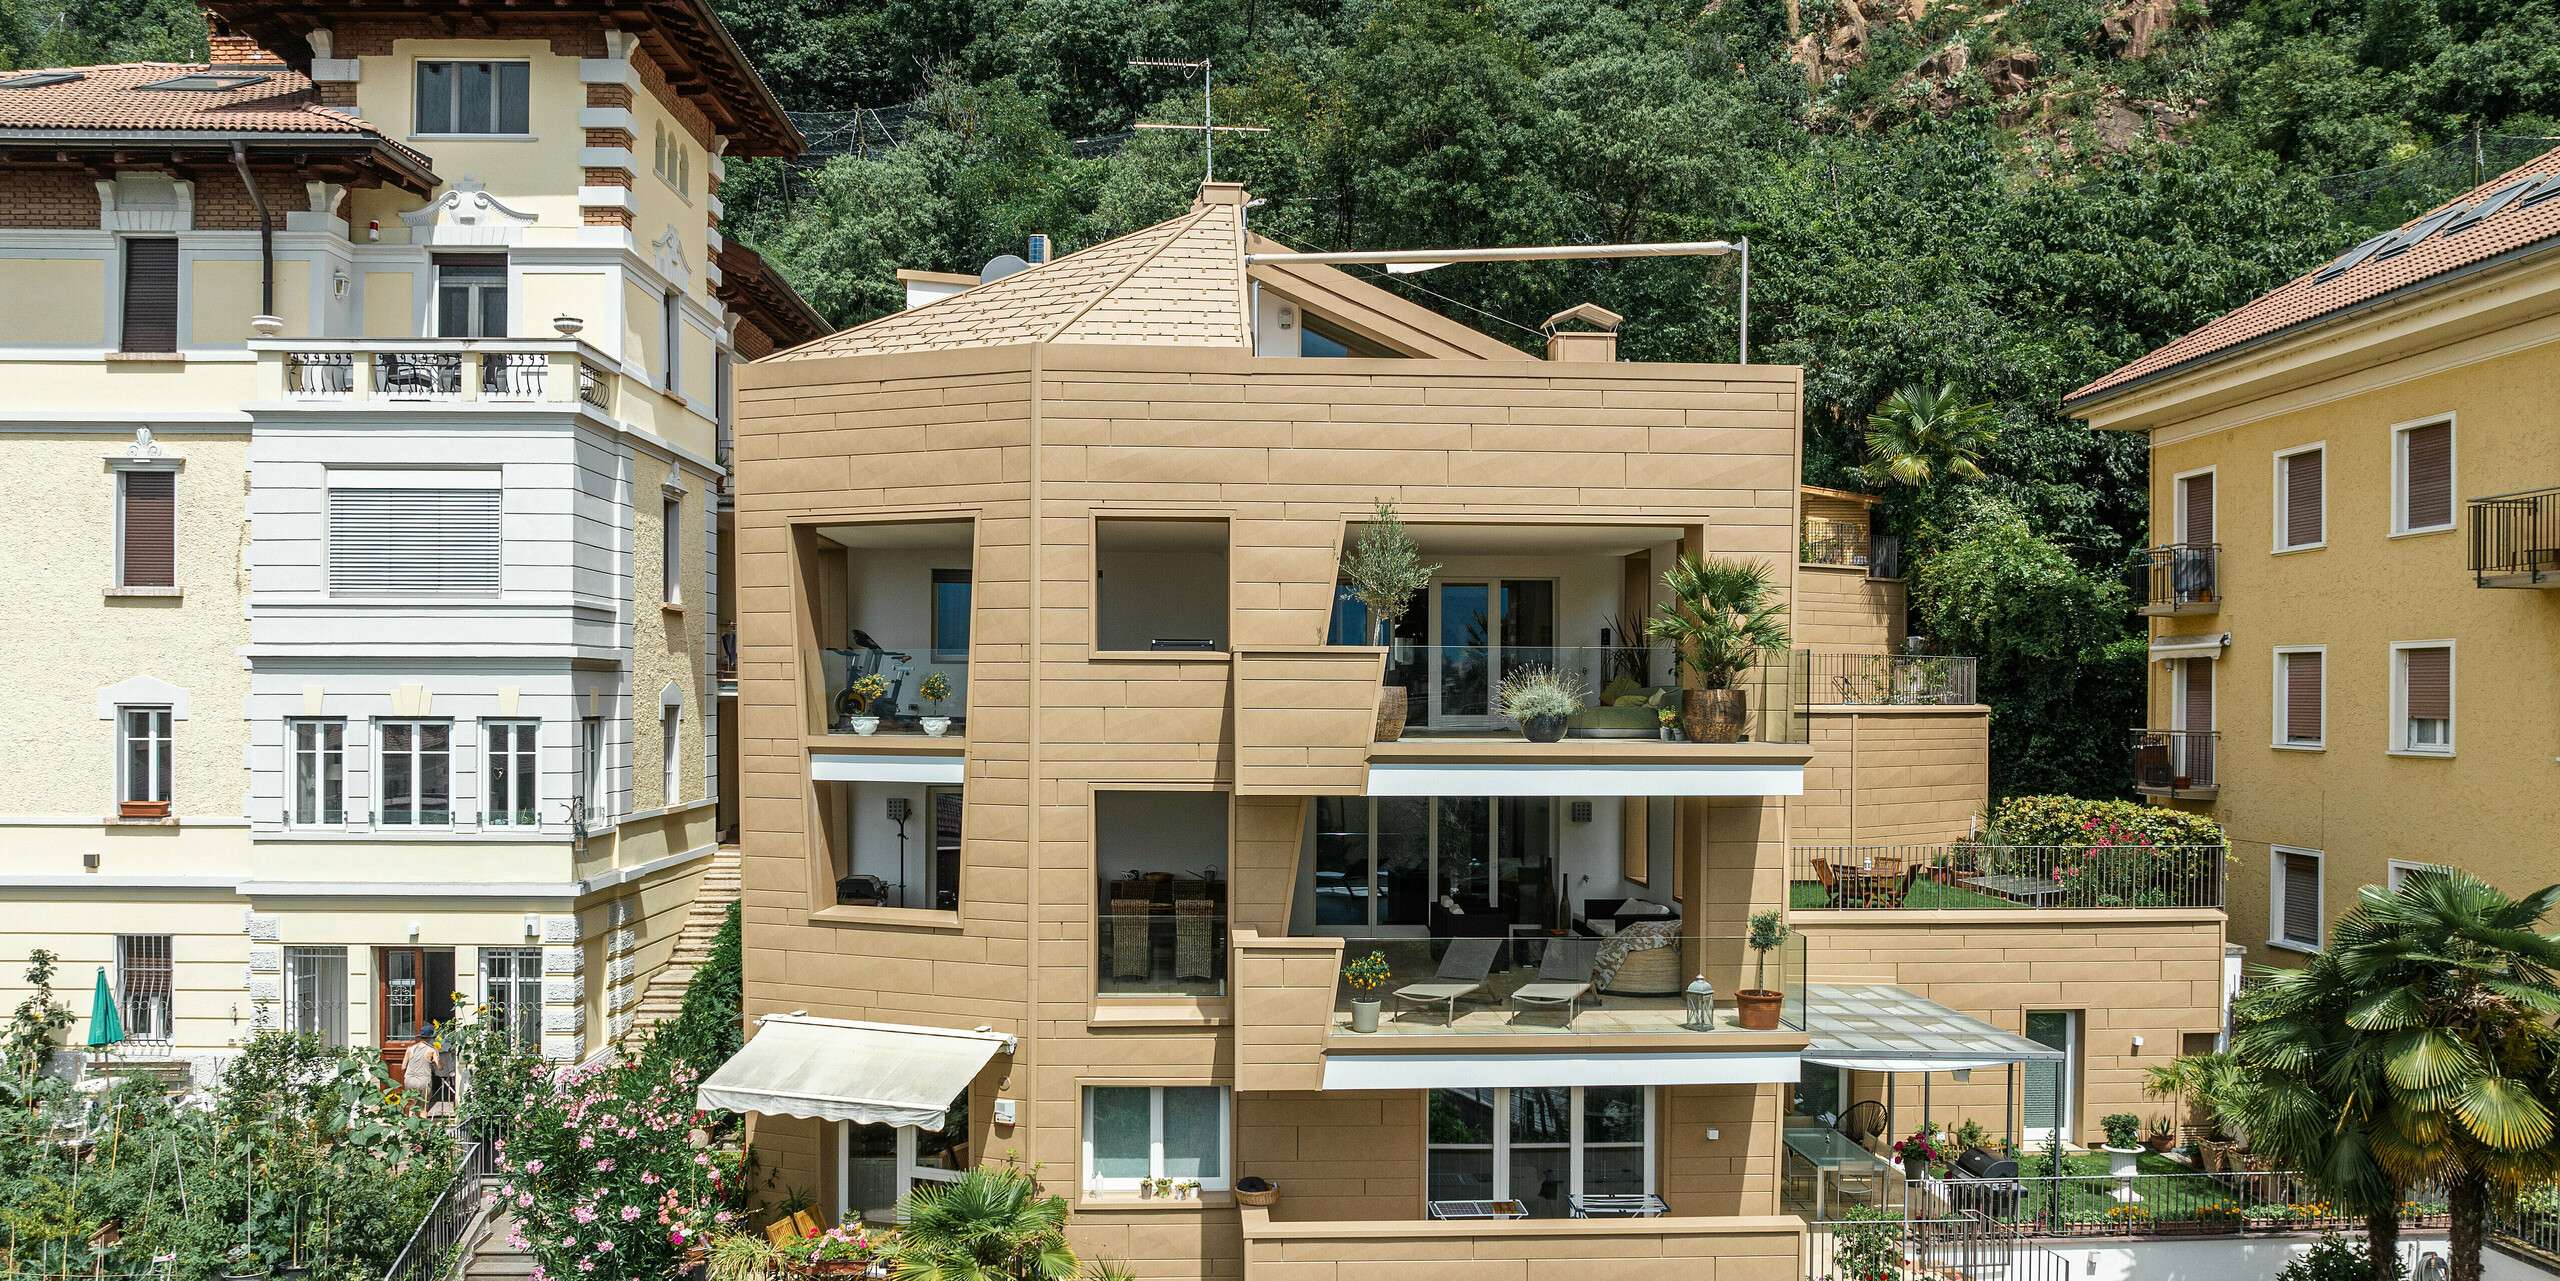 Eindrucksvolle Symbiose von Innovation und Natur: Die 'Villa Laura' in Südtirol zeigt die ästhetische Vielseitigkeit von PREFA Aluminiumprodukten. Die Dachpaneele FX.12 und Siding.X Fassadenelemente in P.10 Sandbraun verbinden Tradition und Moderne und fügen sich natürlich in die Umgebung ein. Die Fassade reflektiert das Sonnenlicht und verleiht der Struktur eine warme und einladende Atmosphäre, während die robuste Aluminiumkonstruktion eine langlebige Bauweise garantiert.